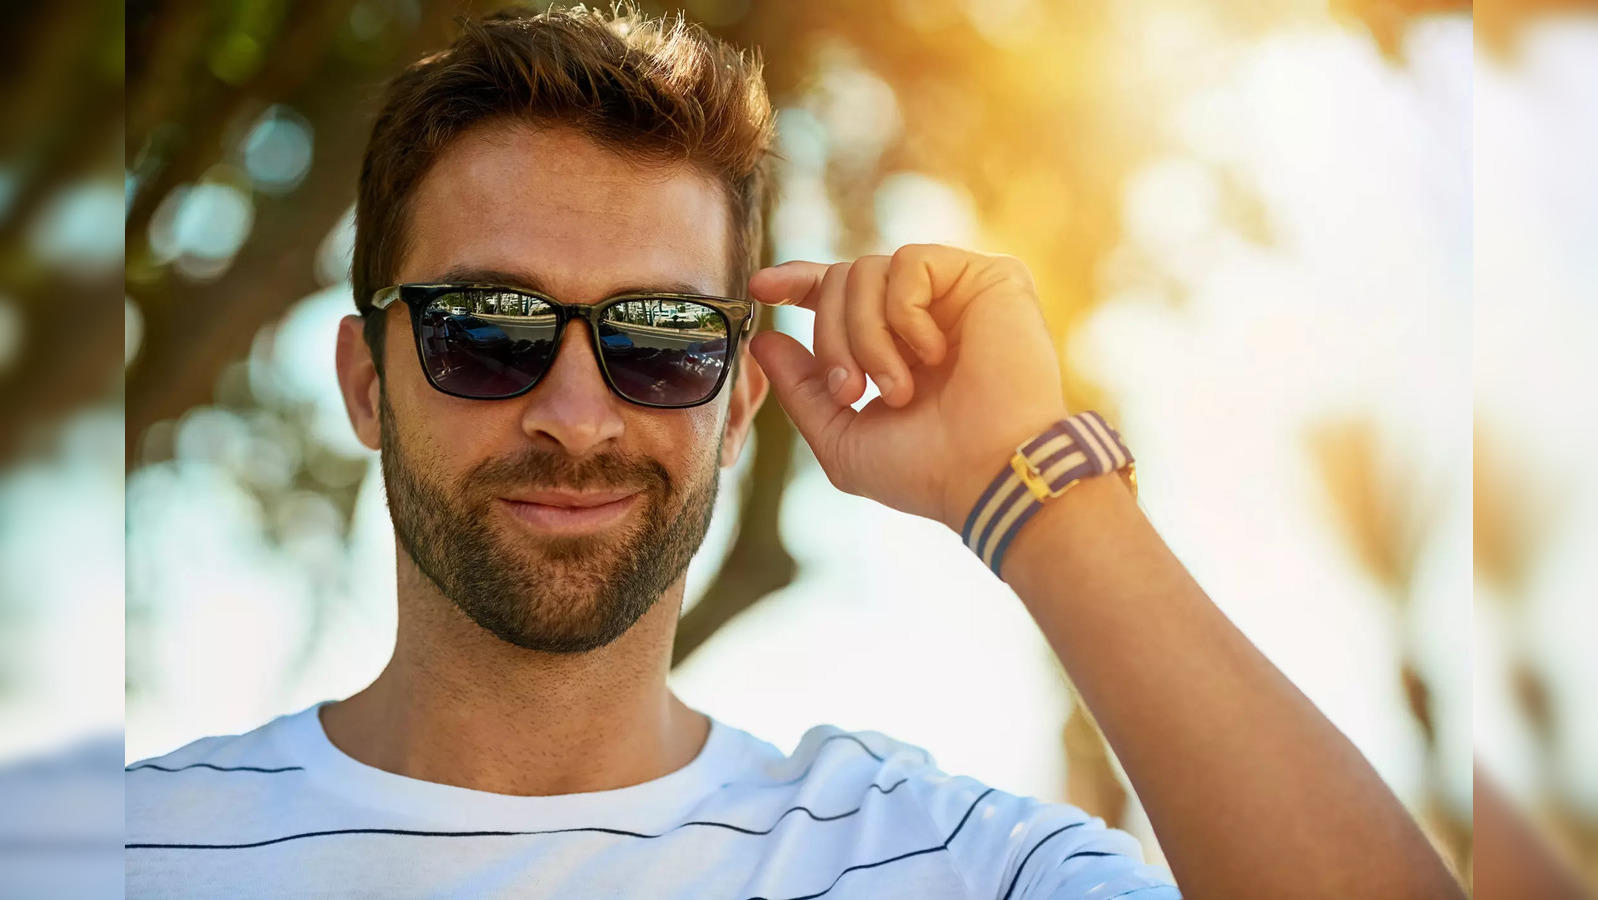 Sunglasses for men: Best Wayfarer Sunglasses for Men - The Economic Times